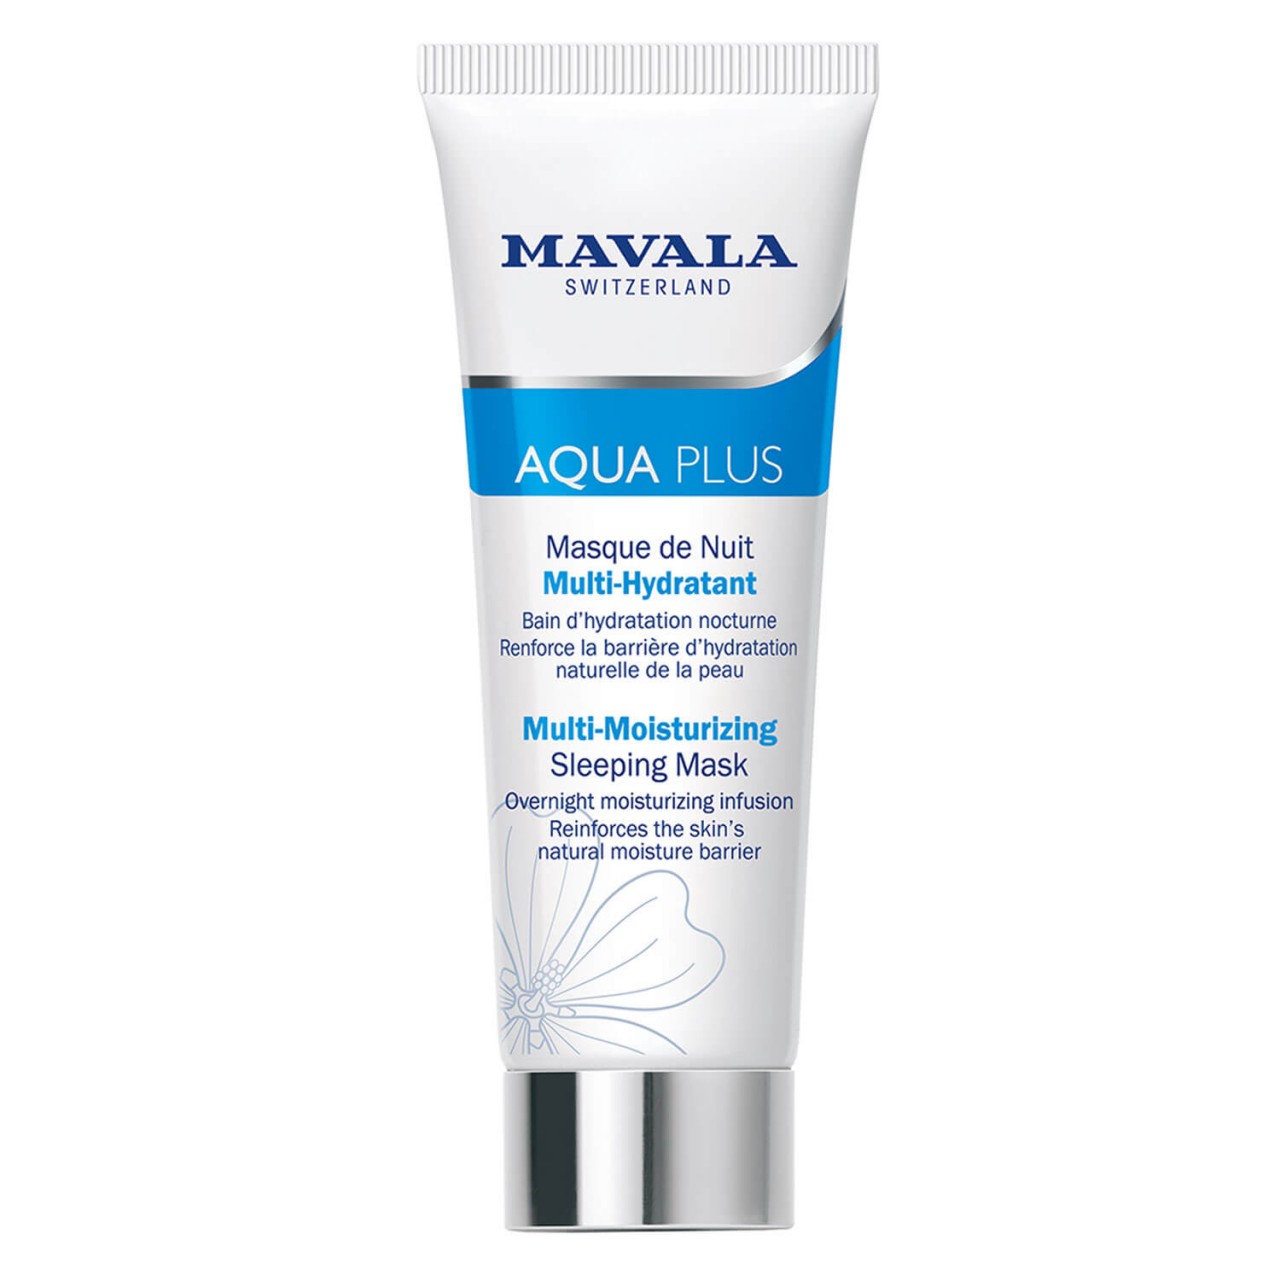 Swiss Skin Solution - Aqua Plus Masque de Nuit Multi-Hydratant von Mavala